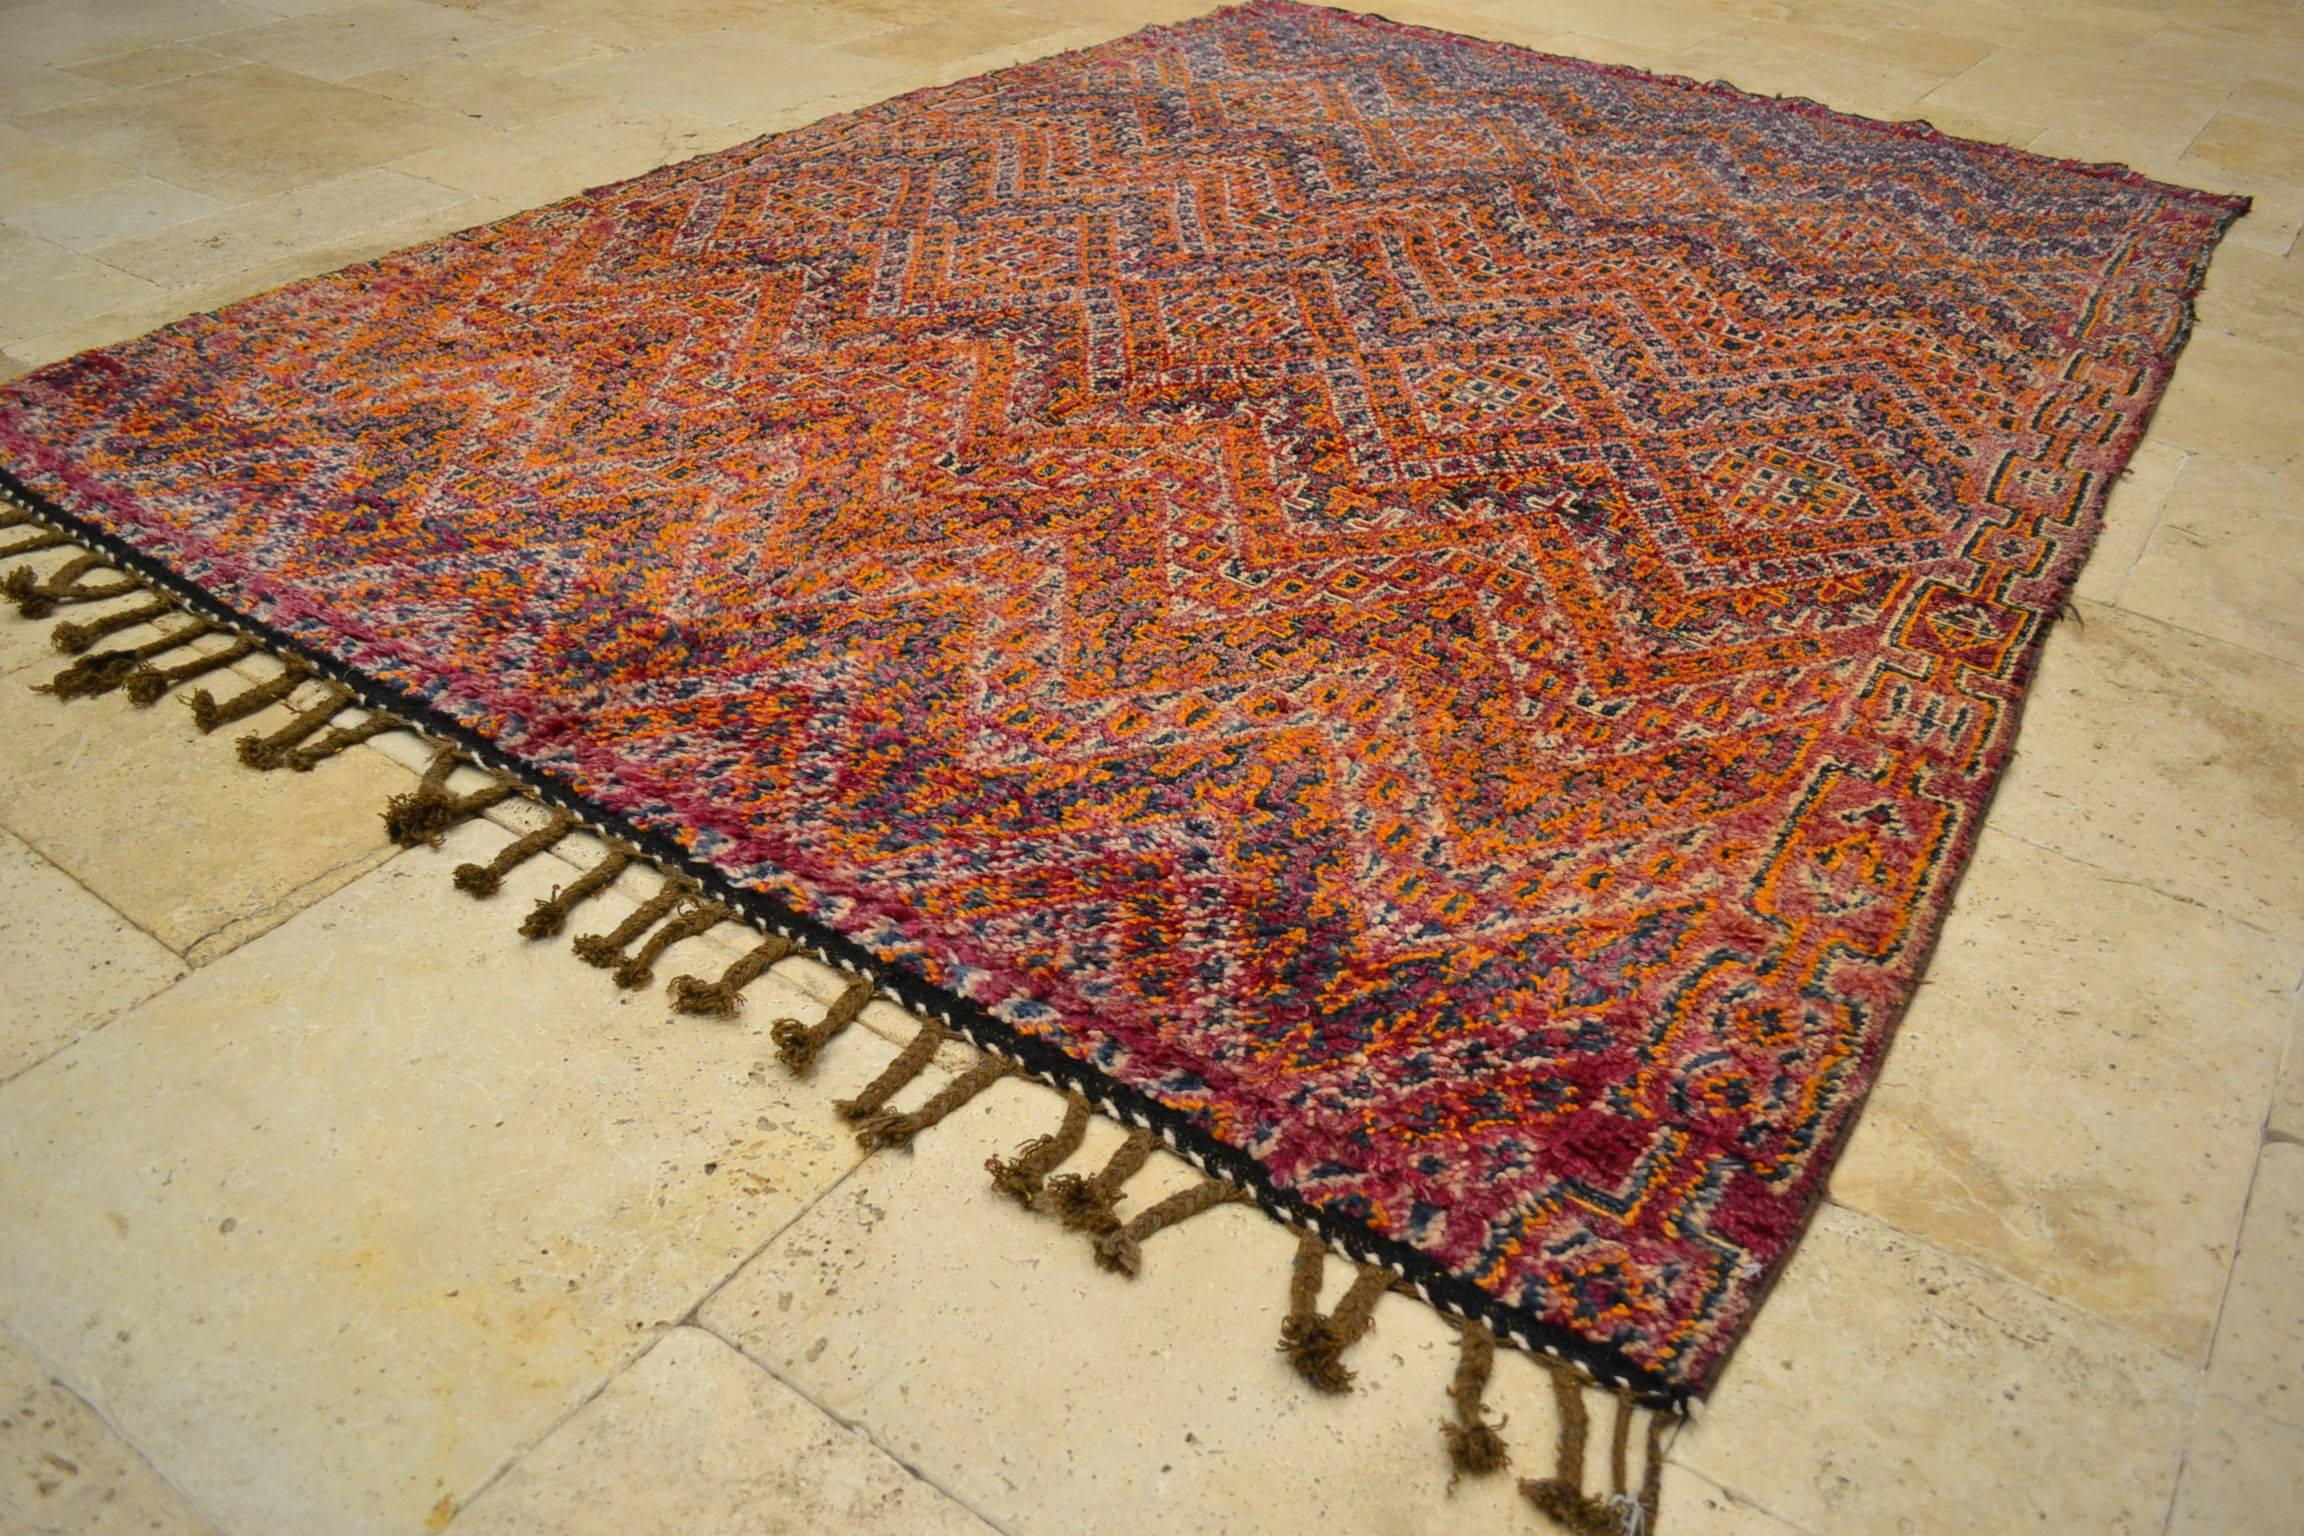 Vintage Moroccan rug.